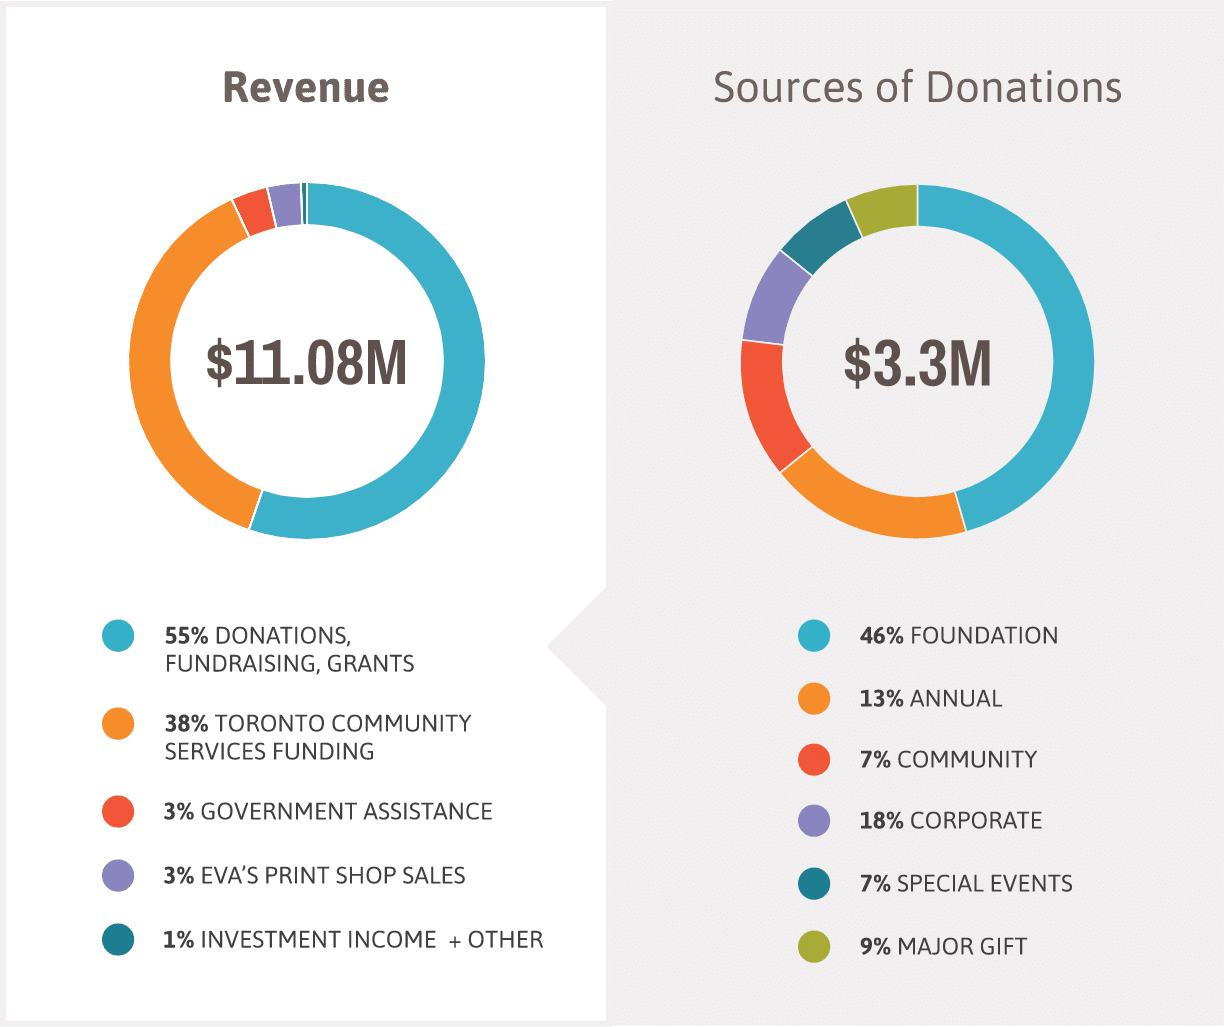 Revenue: $11.08 million, sources of Donations: $3.3 million